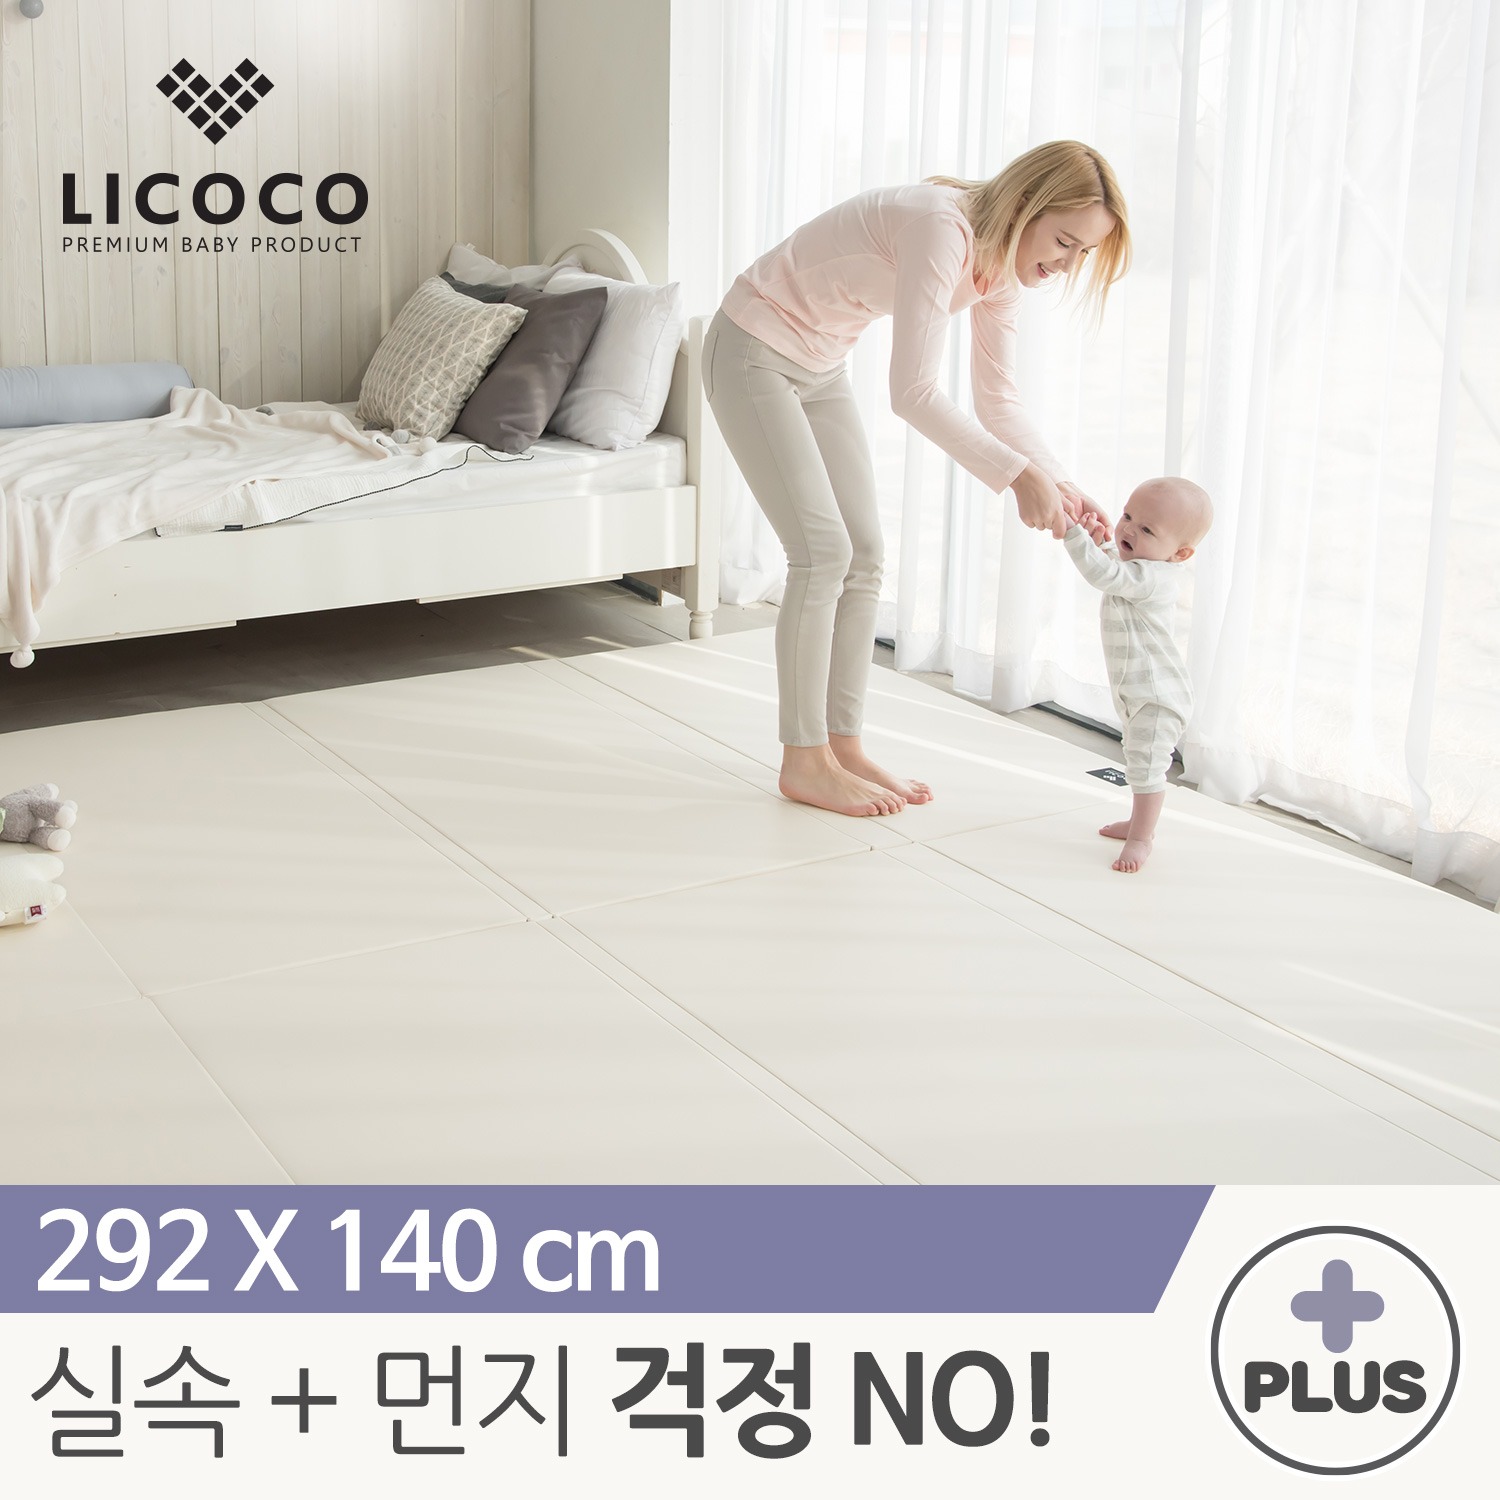 [리코코] NEW 클린롤매트 Plus 292x140cm 아이보리 / 거실 복도 놀이방 층간소음 아기 매트